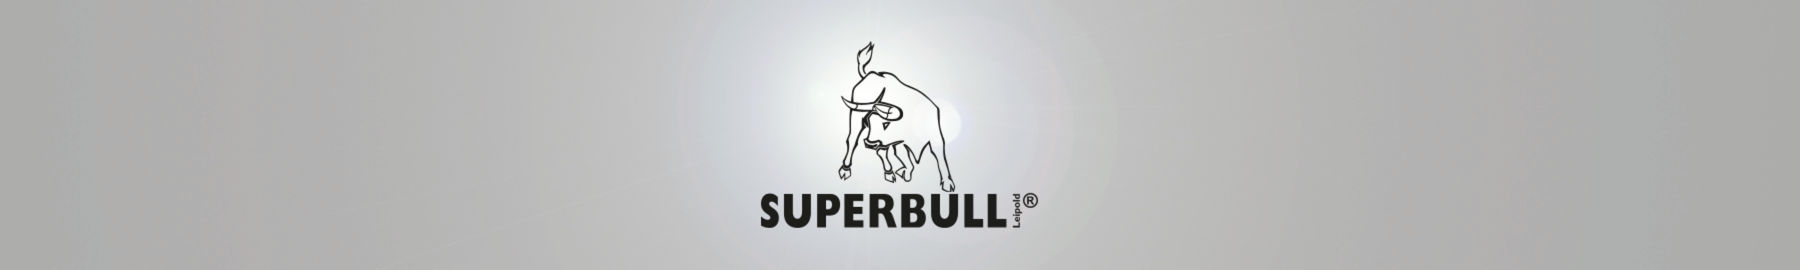 Superbull